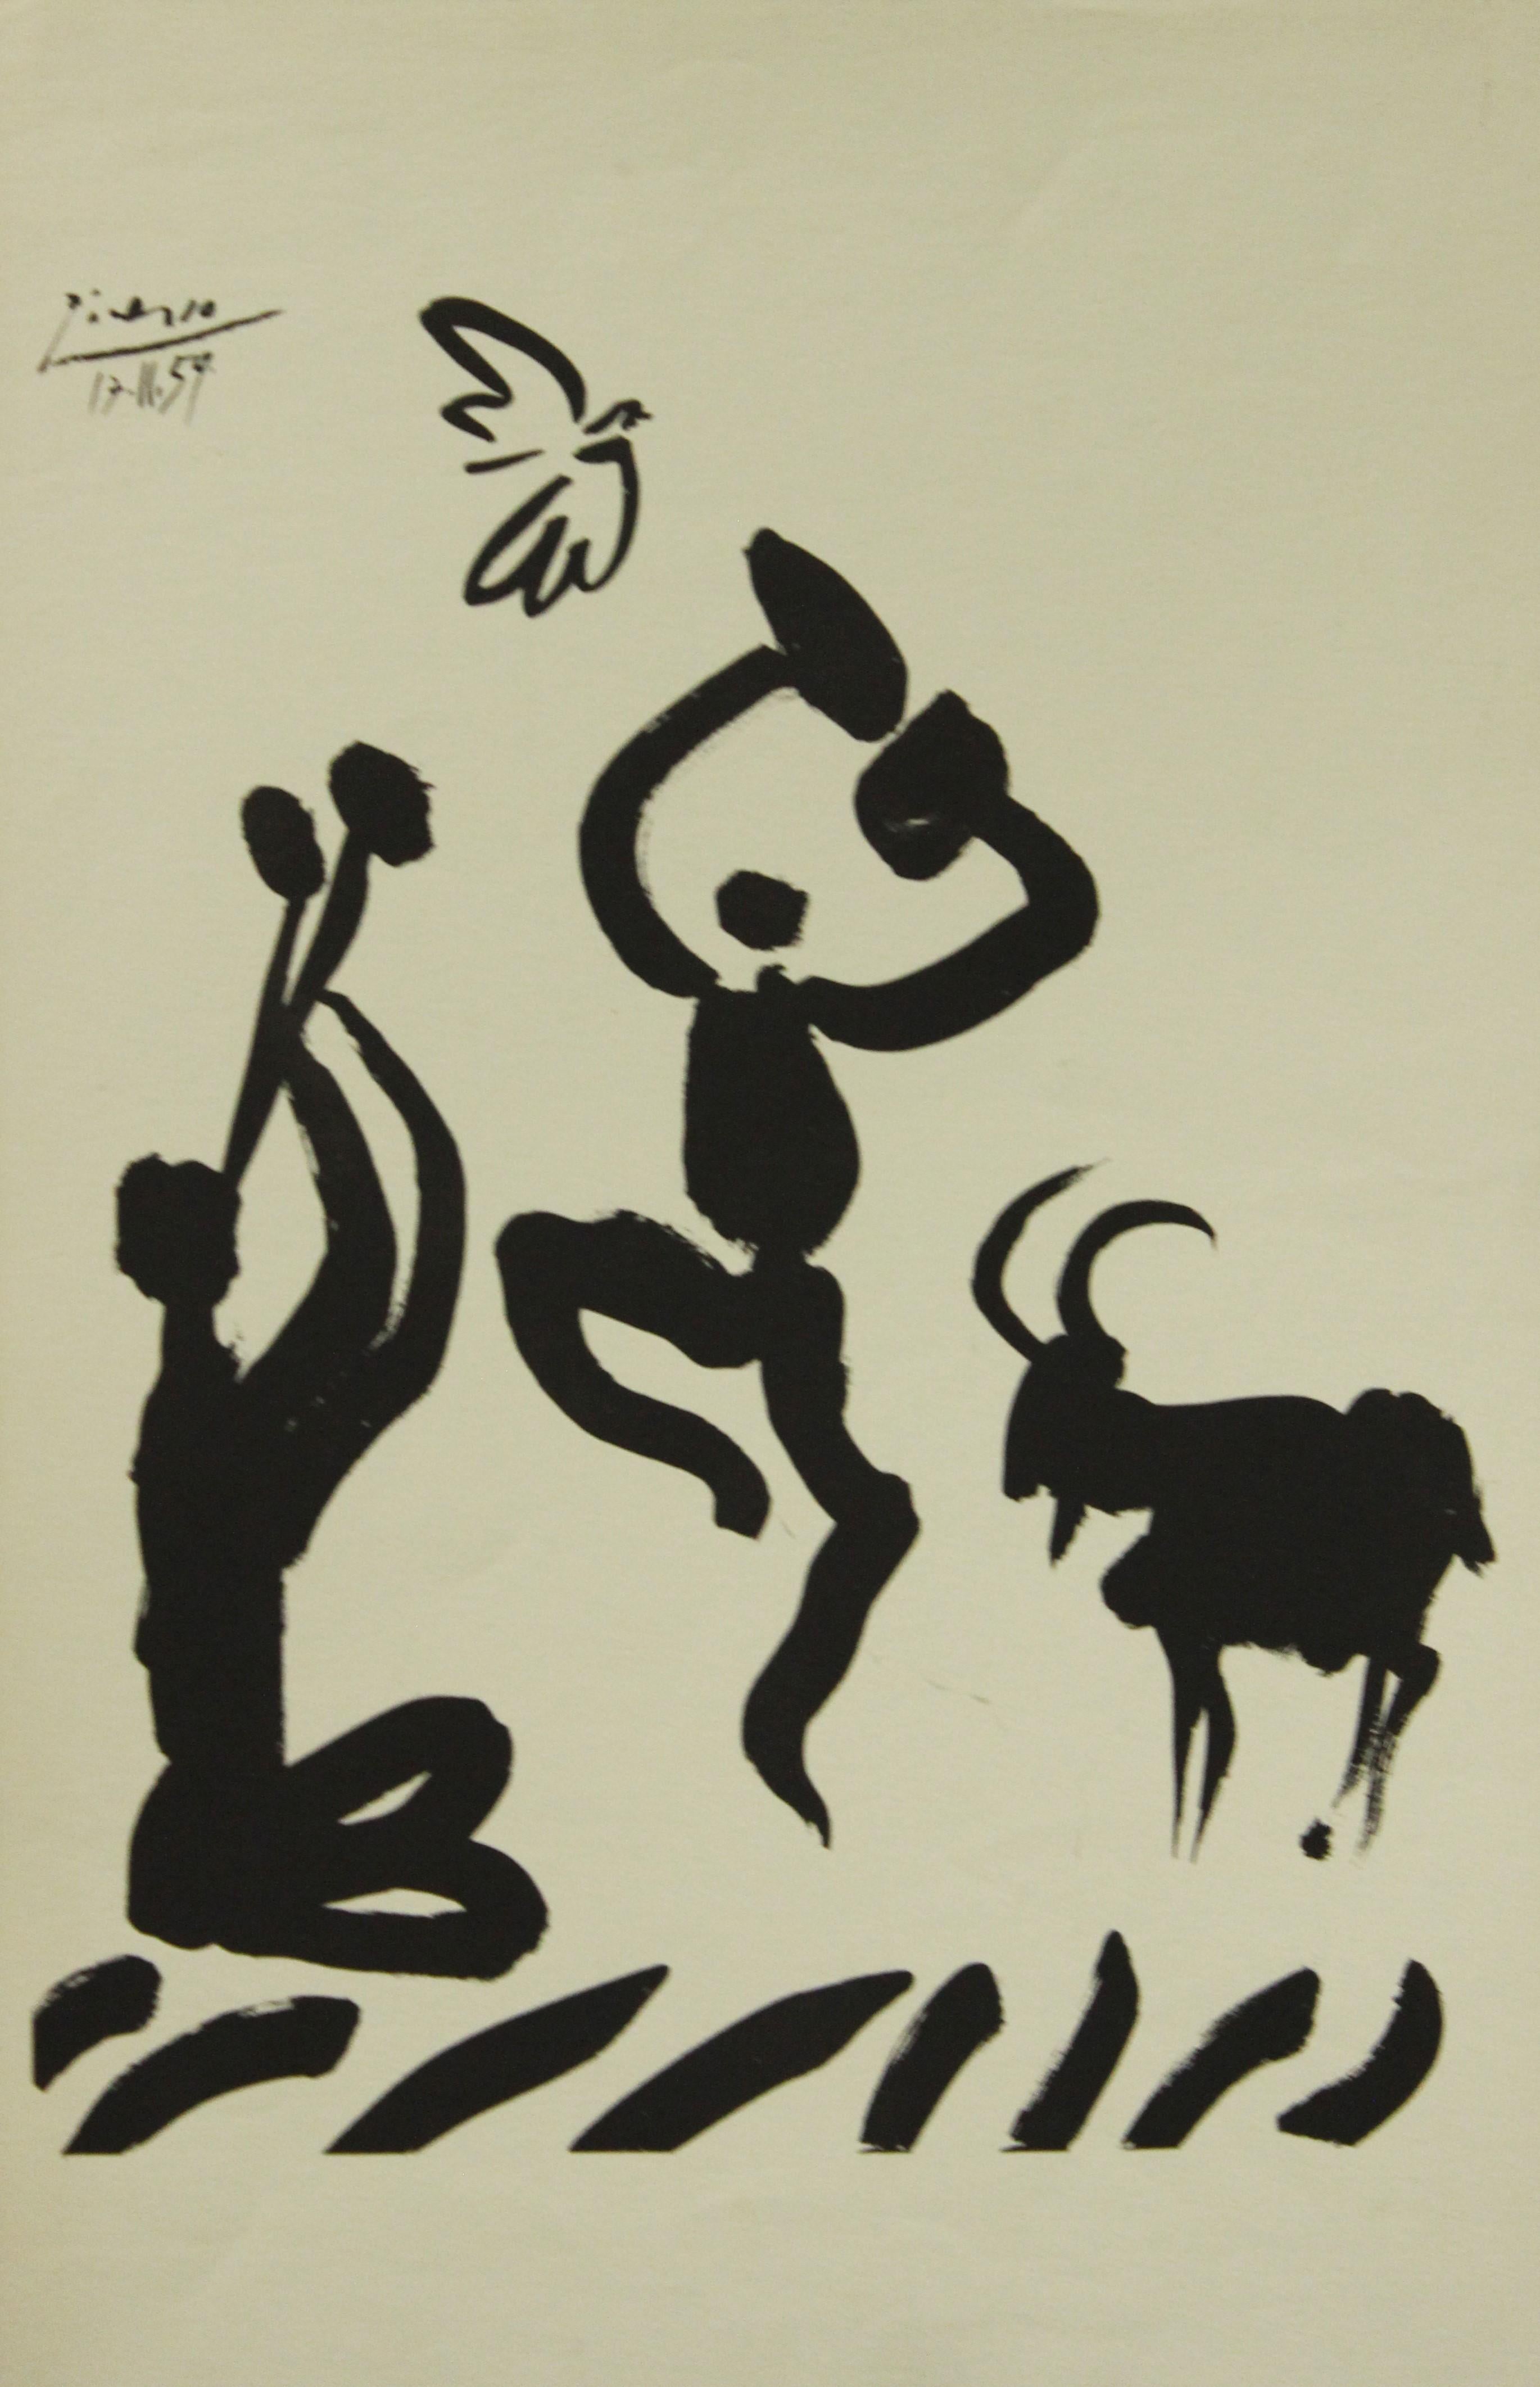 Pablo Picasso Portrait Print - Poster-Goat Dance (Reproduction)